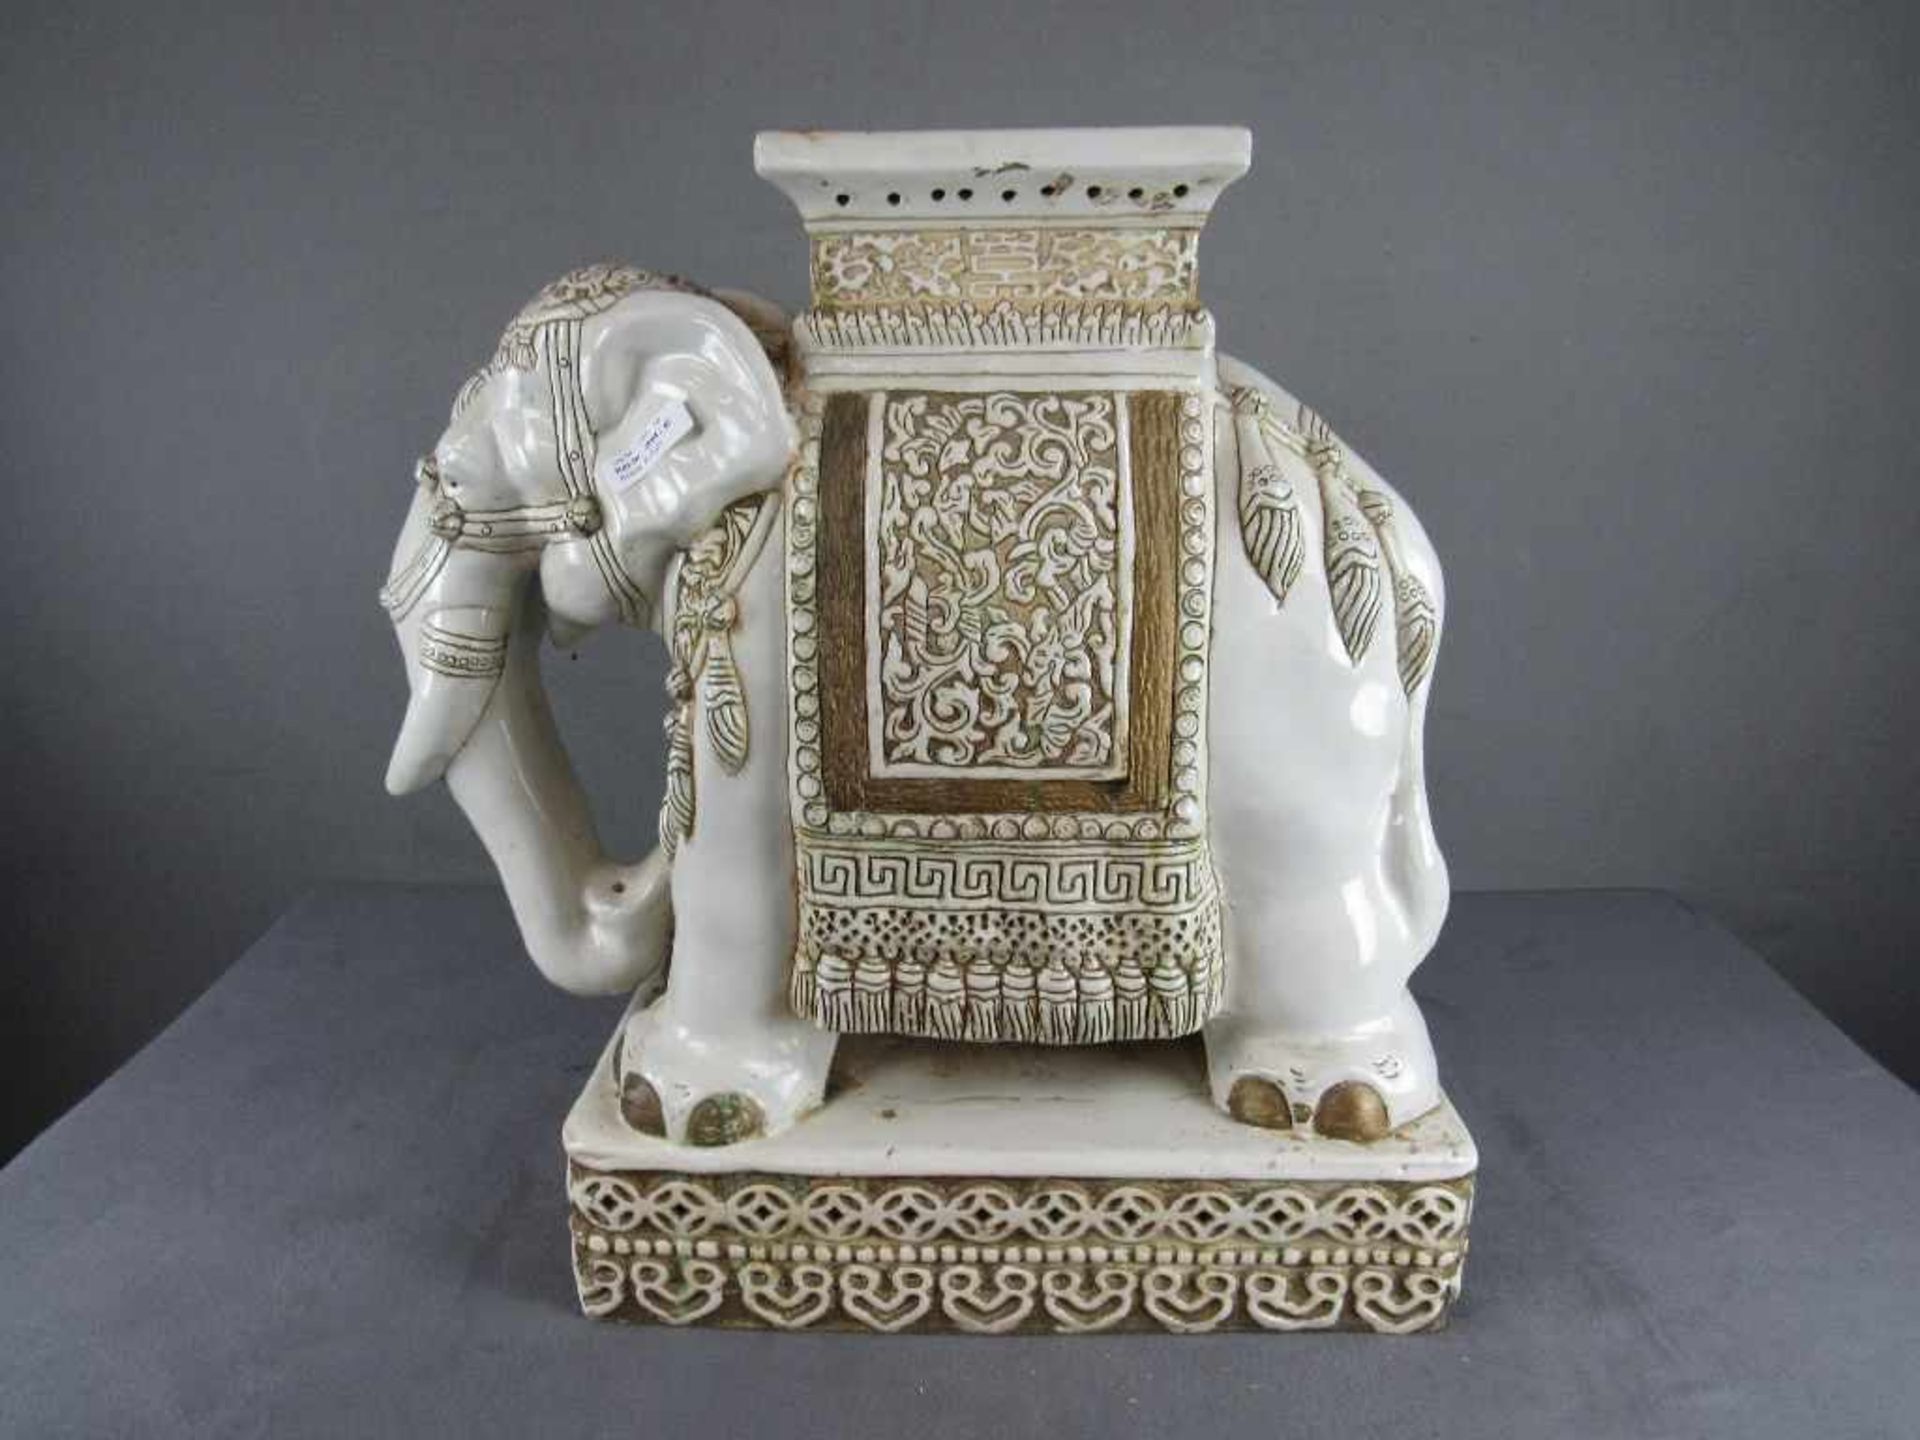 Asiatischer Elefant lasierte Keramik als Blumensäule verwendbar- - -20.00 % buyer's premium on the